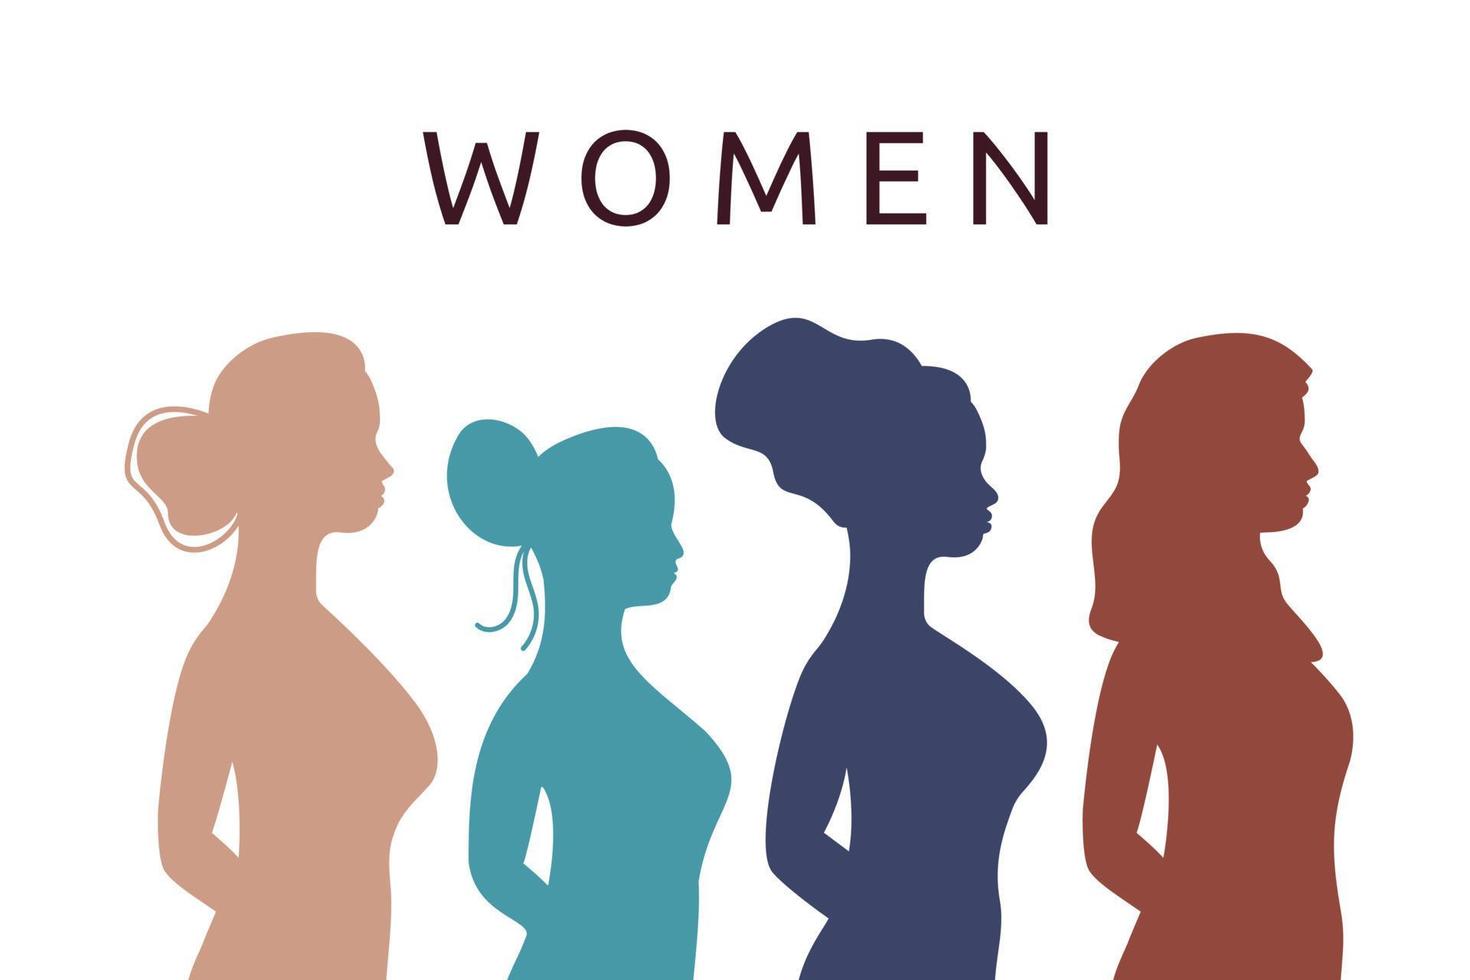 siluetas femeninas de perfil. grupo de mujeres de diferentes etnias y culturas juntas. texto de mujeres. ilustración plana vectorial vector